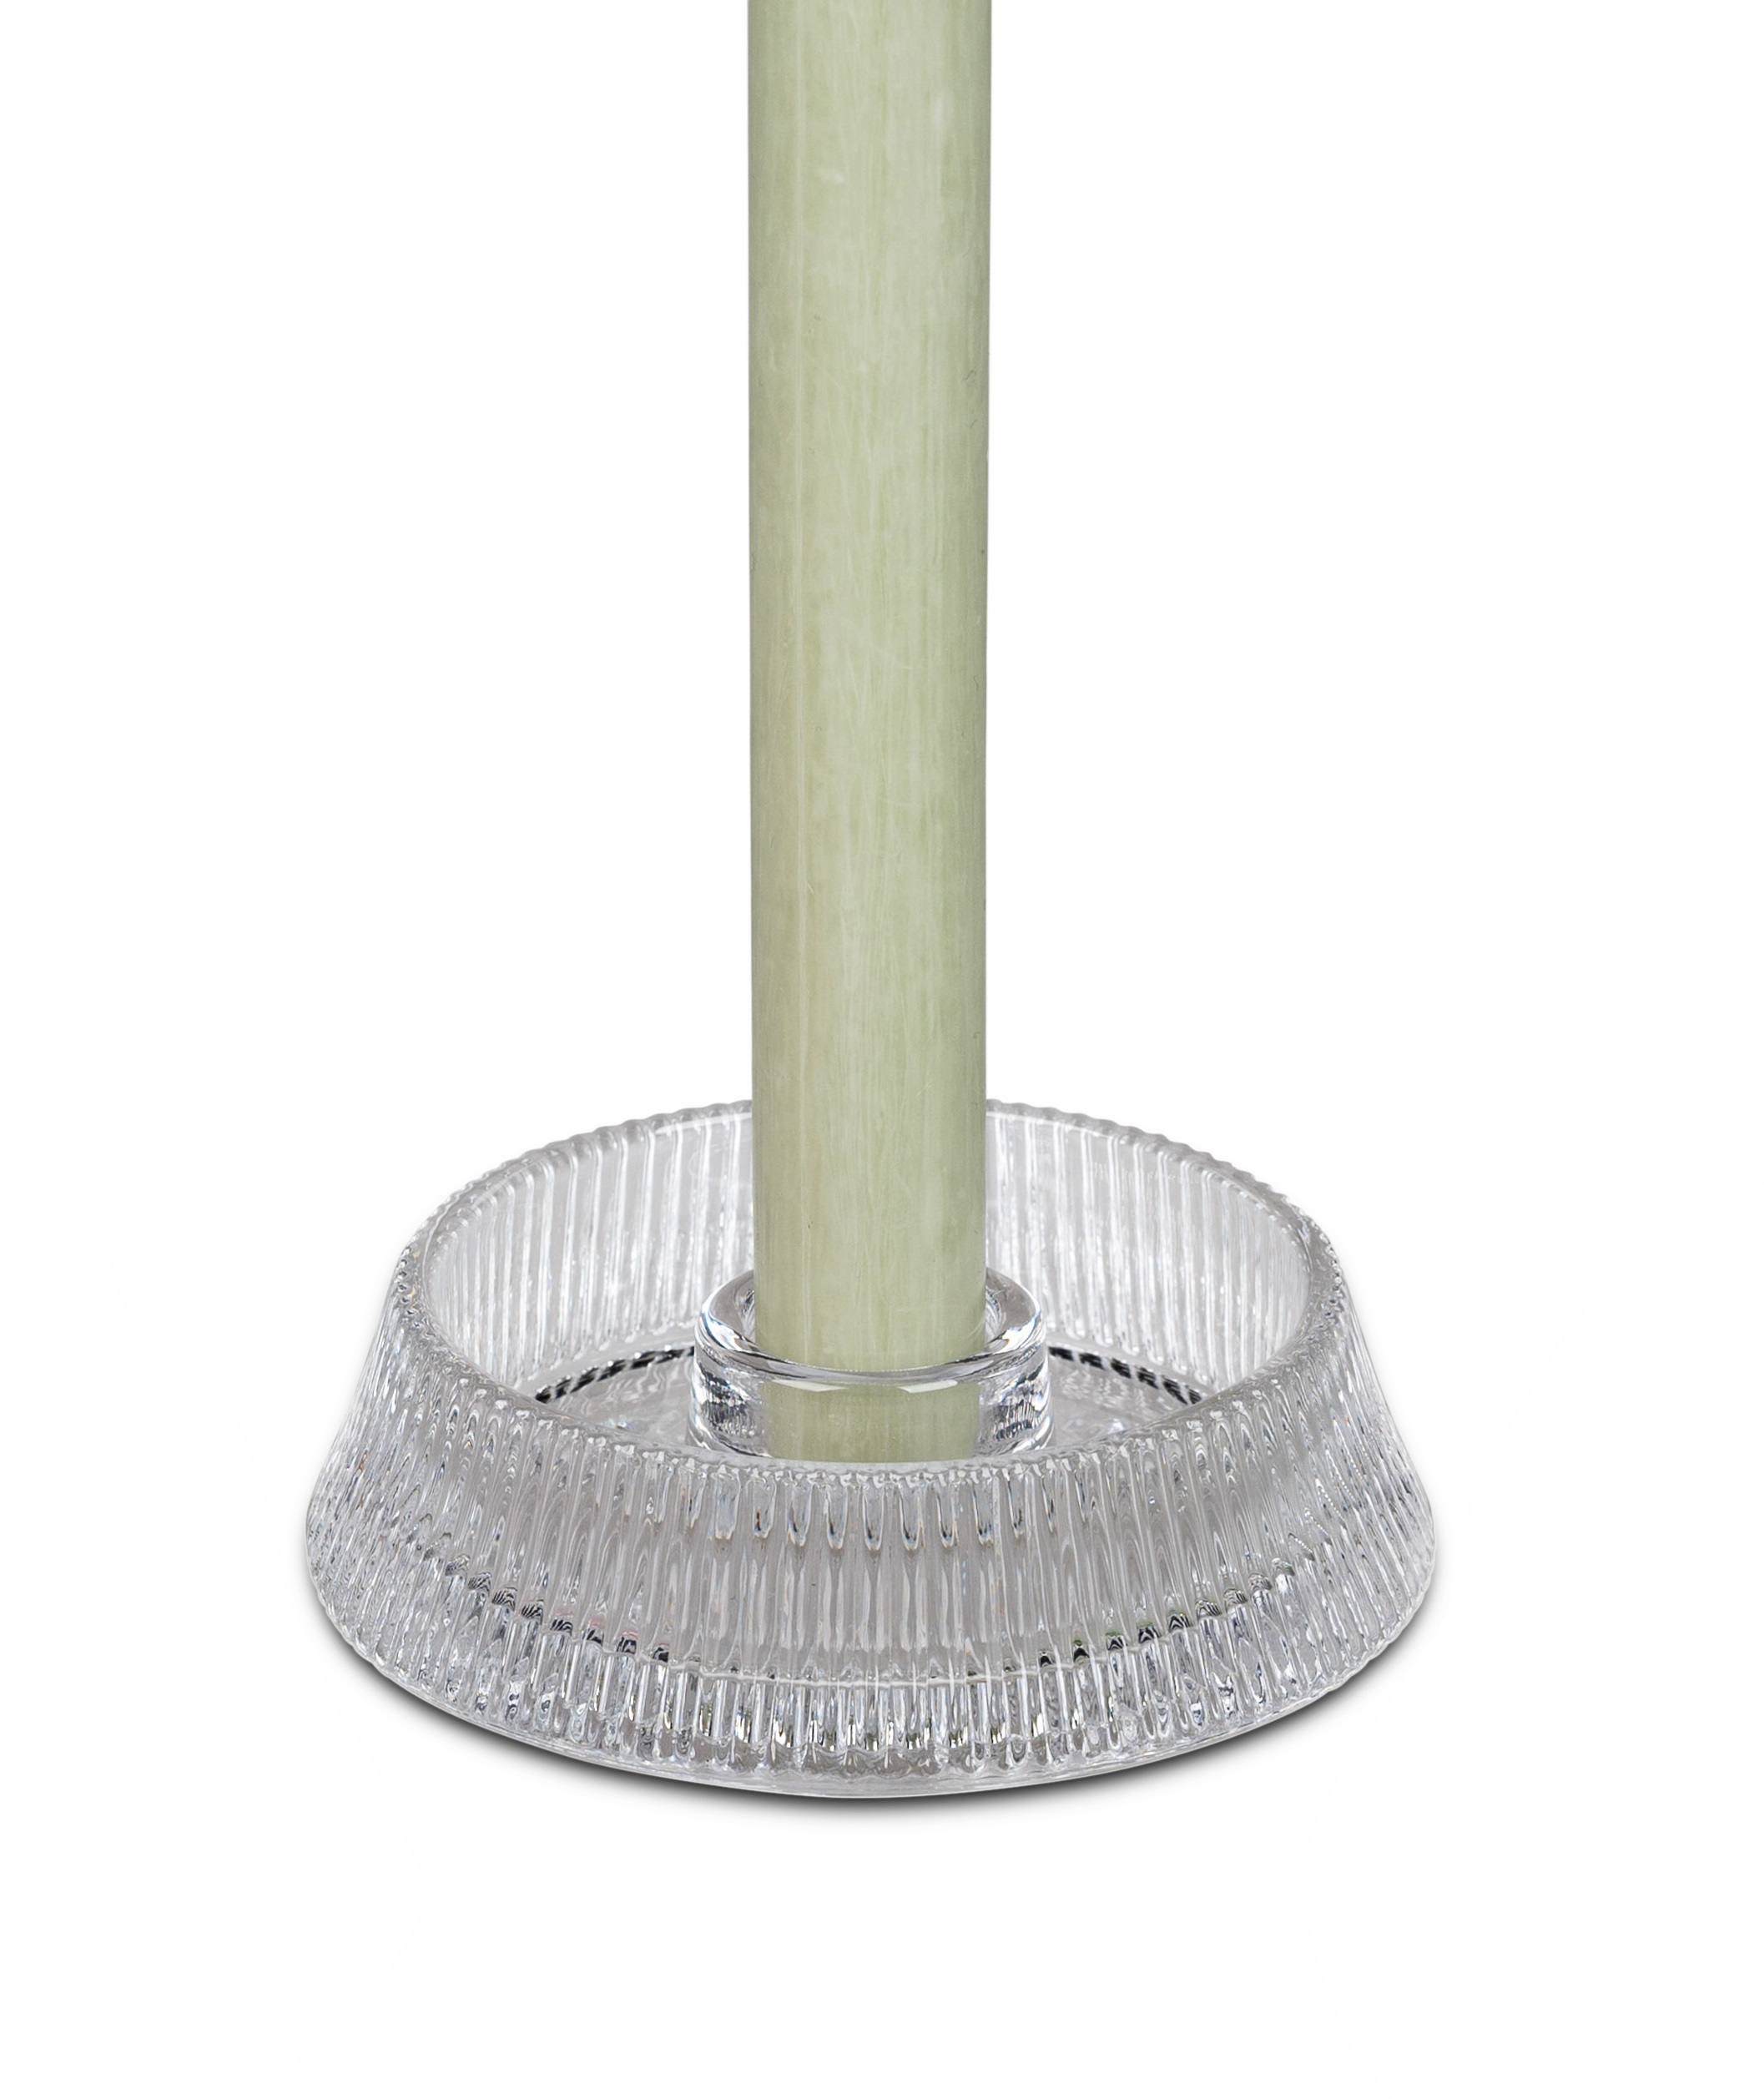 Leuchter Ø 11cm flach klar für Stabkerzen Kerzenleuchter Teelichthalter aus Glas formano F24